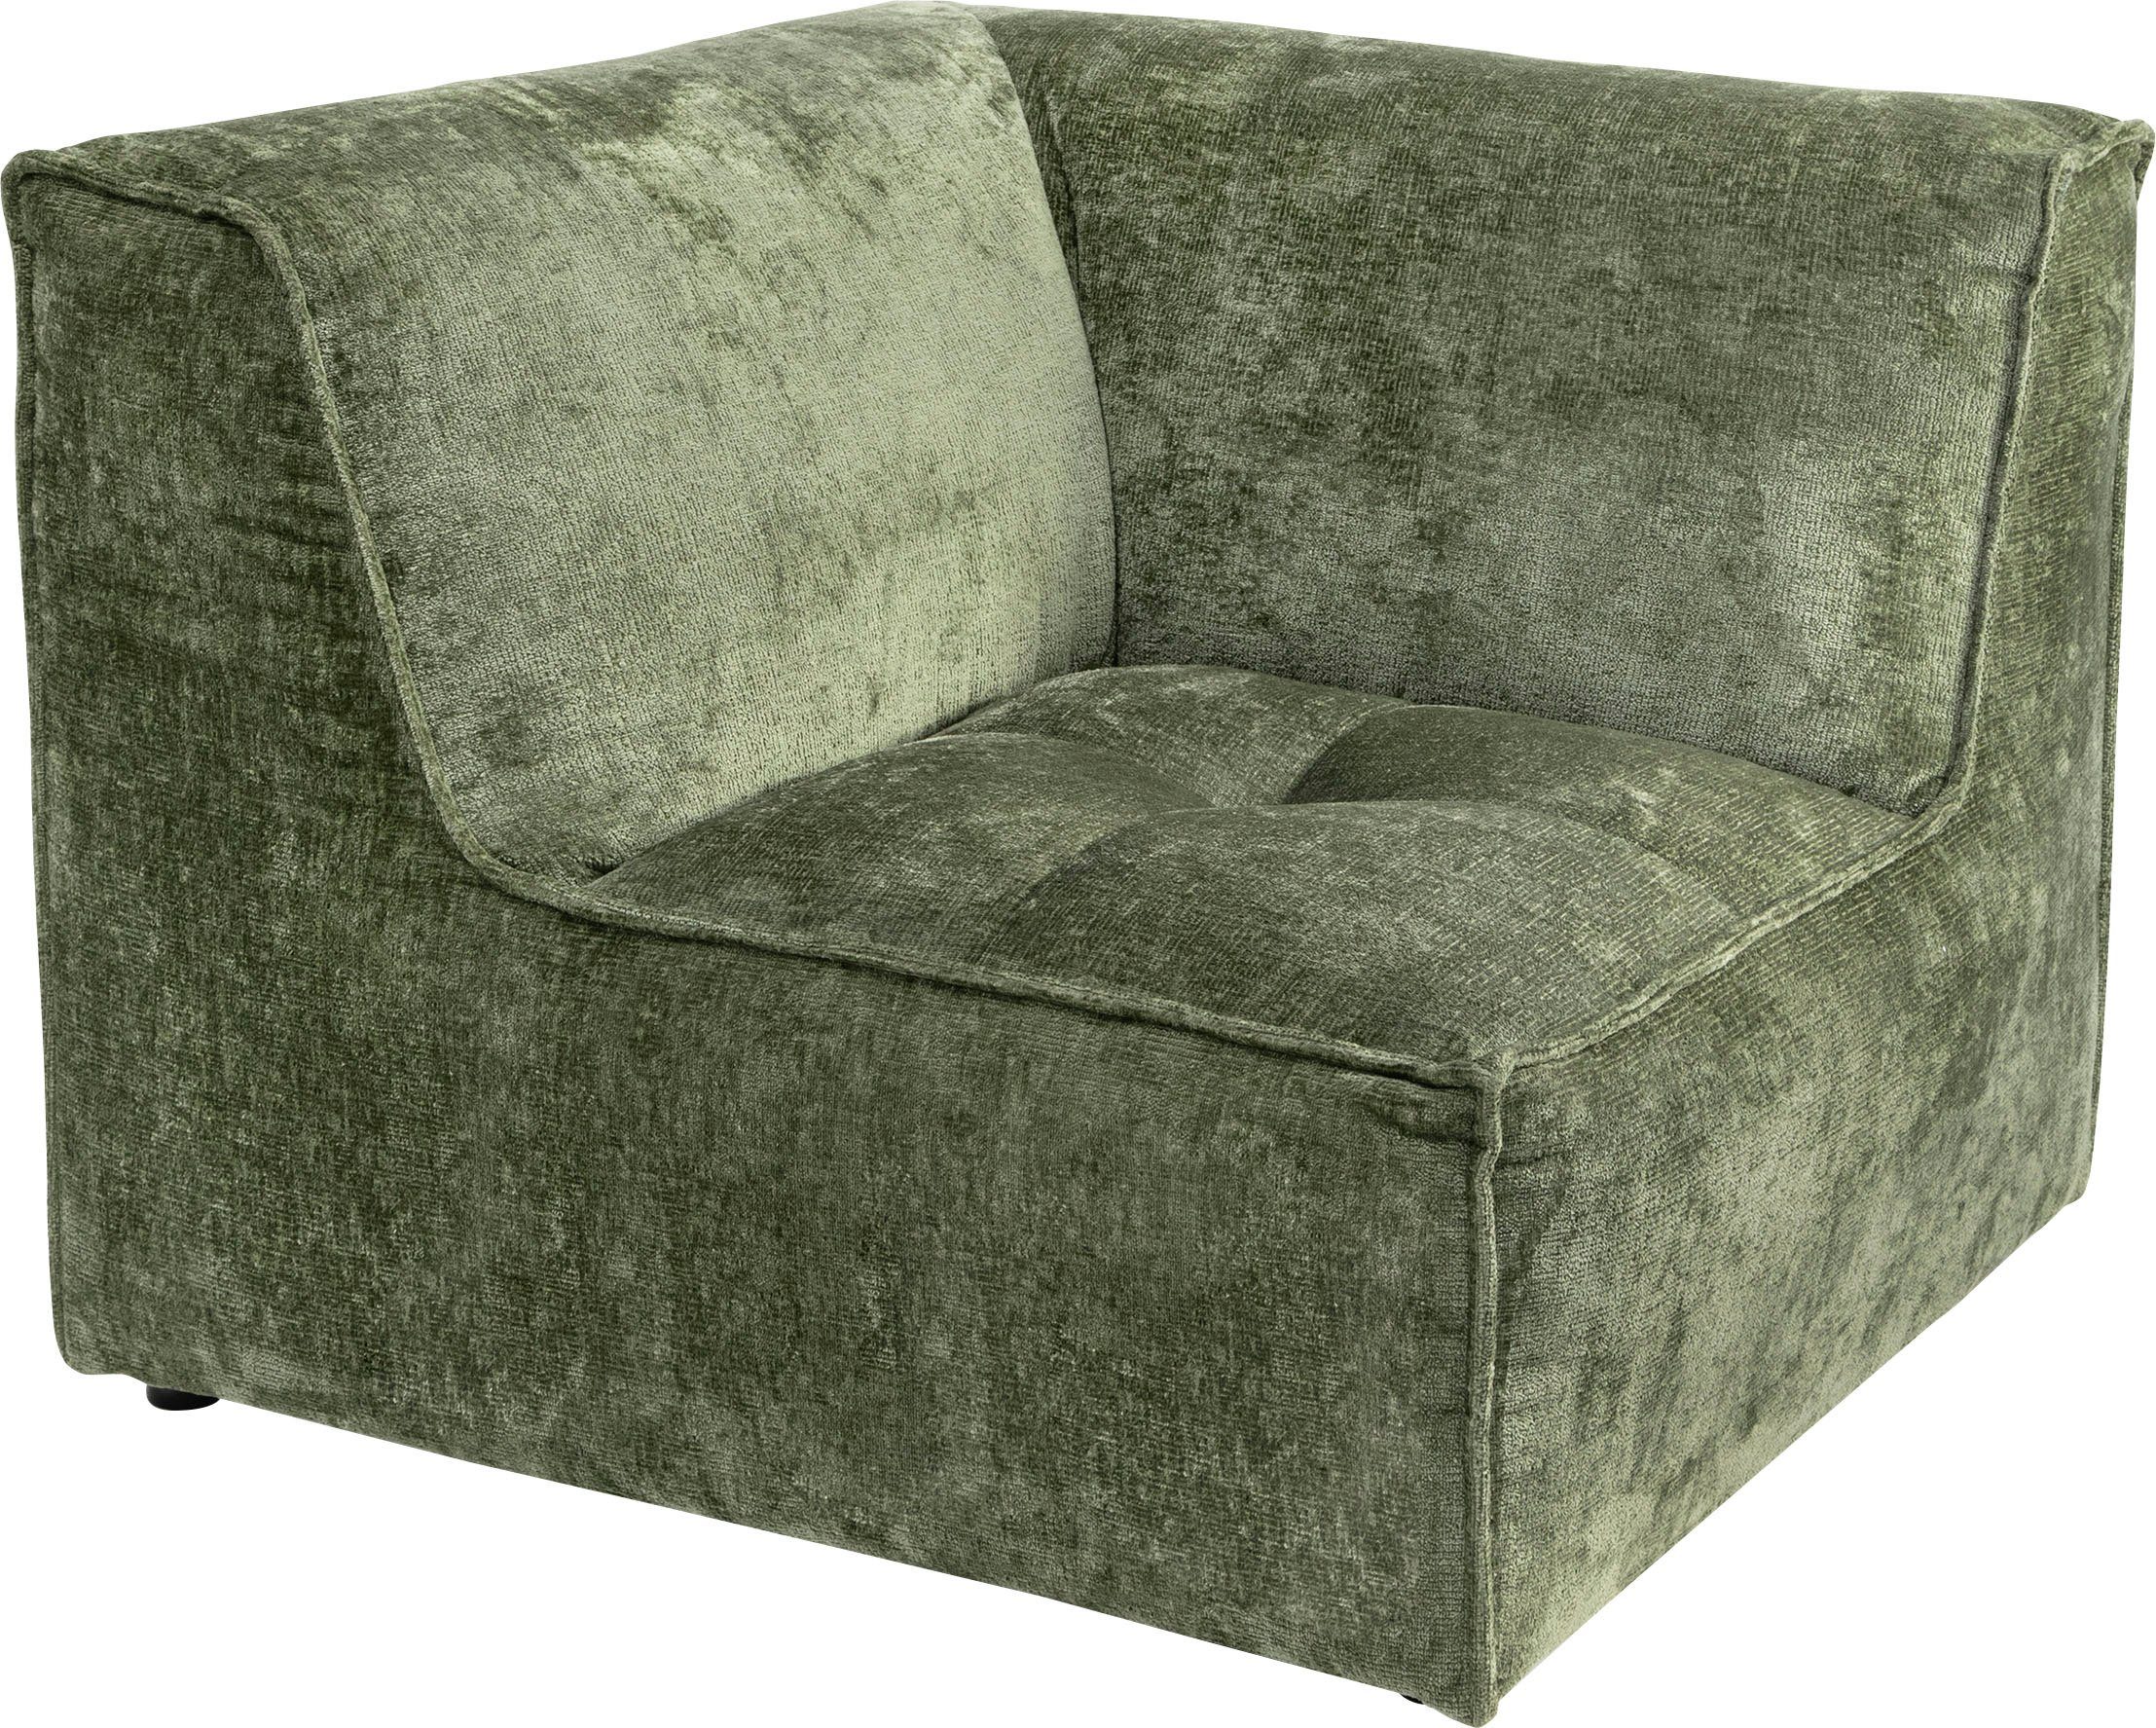 individuelle separat Monolid oder (1 Modul für Sofa-Eckelement RAUM.ID olivgrün Zusammenstellung St), verwendbar, als